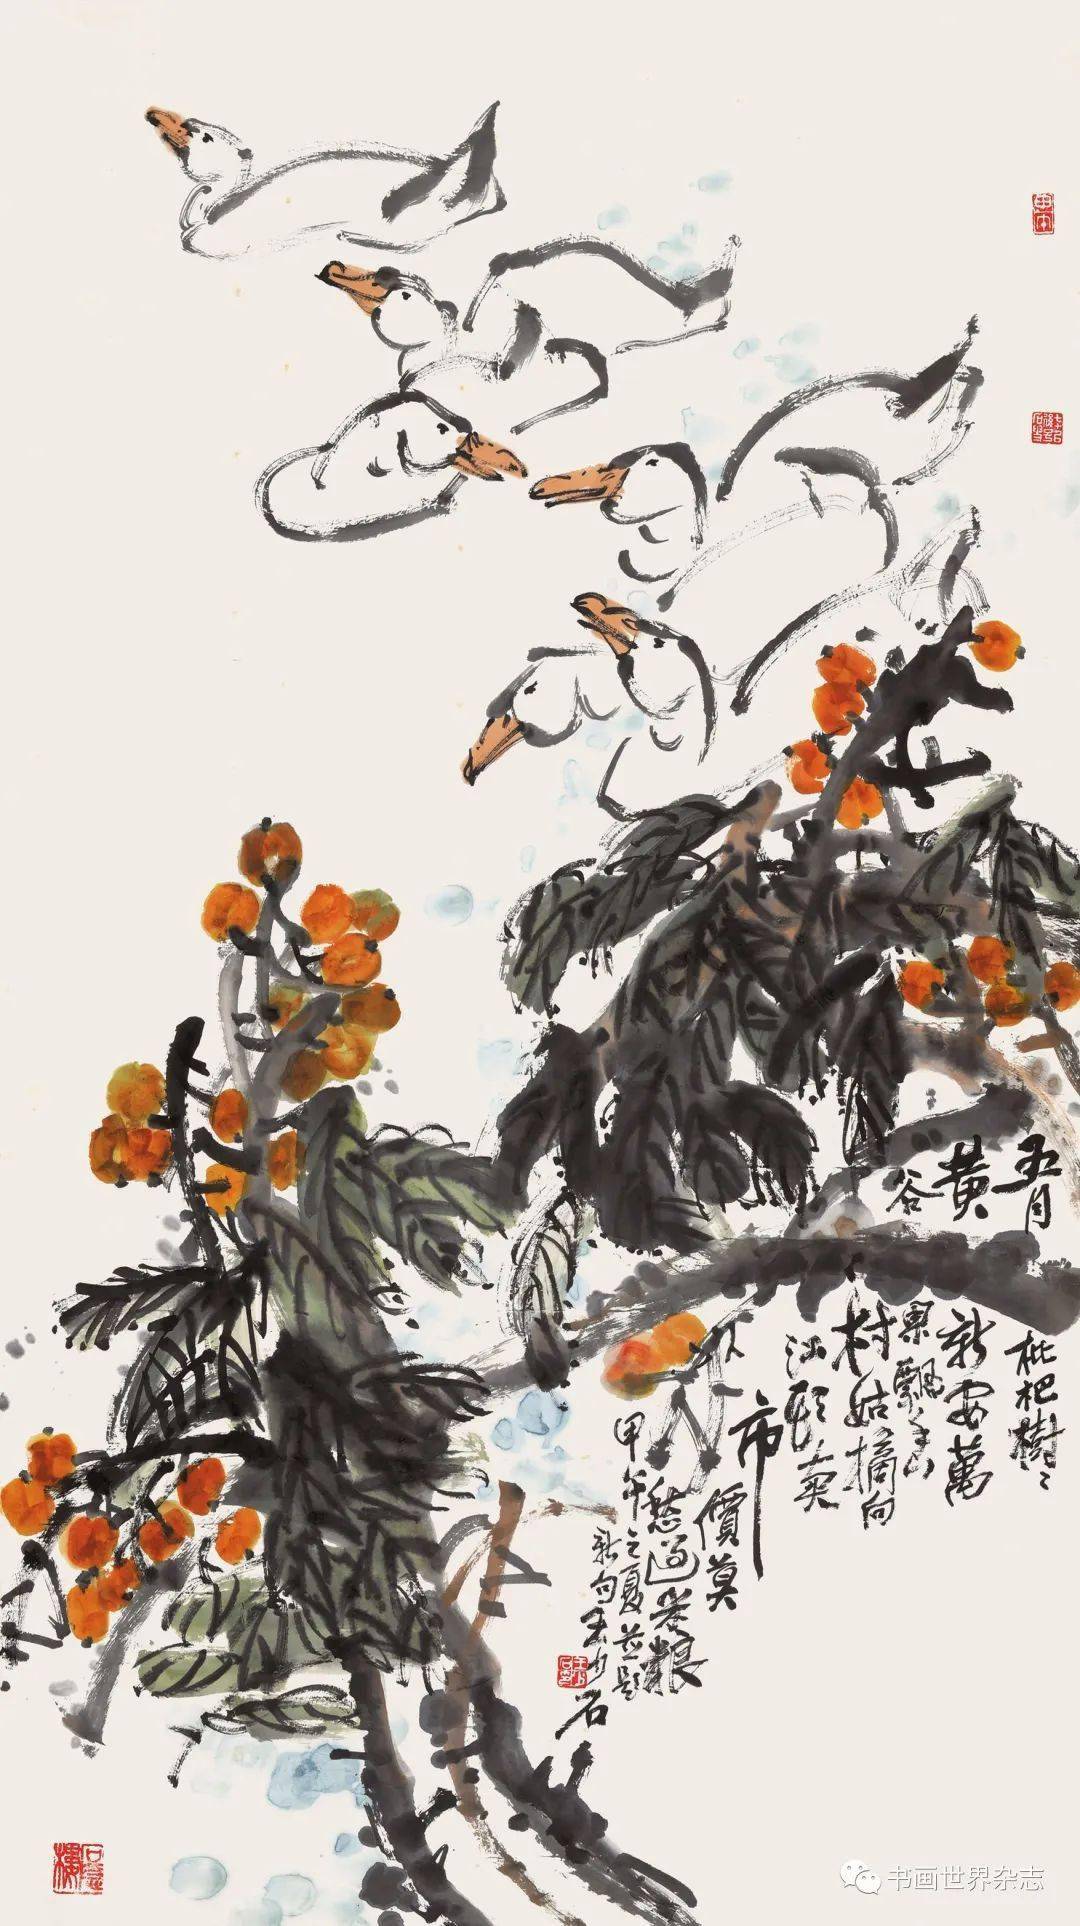 龙城画派影响了一大批大写意画家,其中成就较高的当数萧龙士,刘惠民